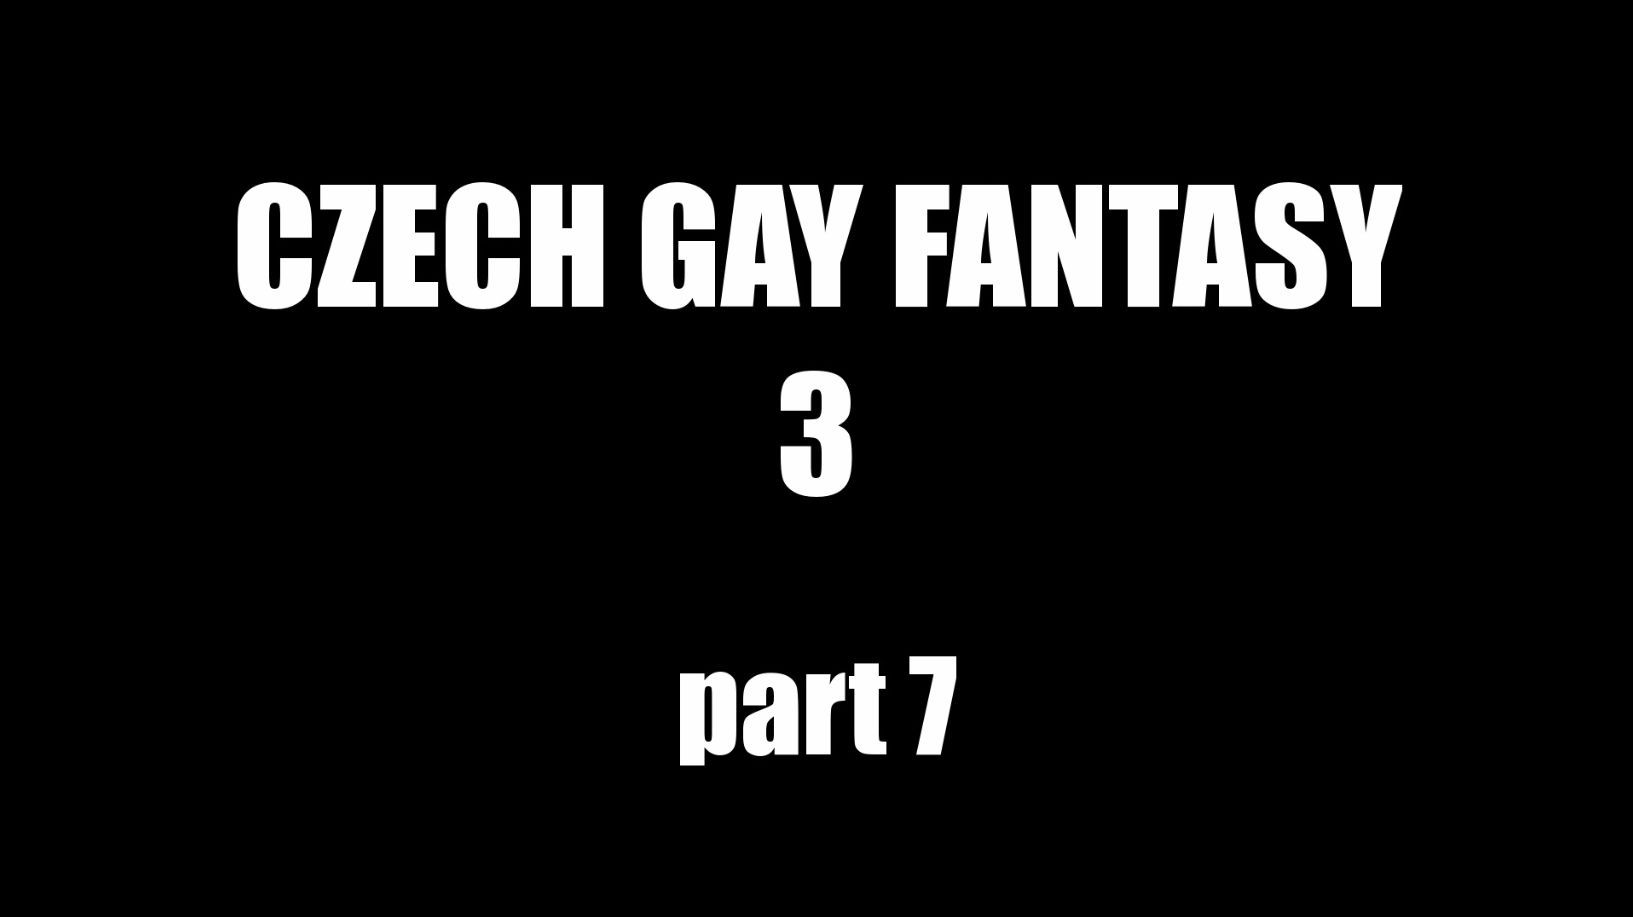 Czech Gay Fantasy 3 Part 7 1080p Hd